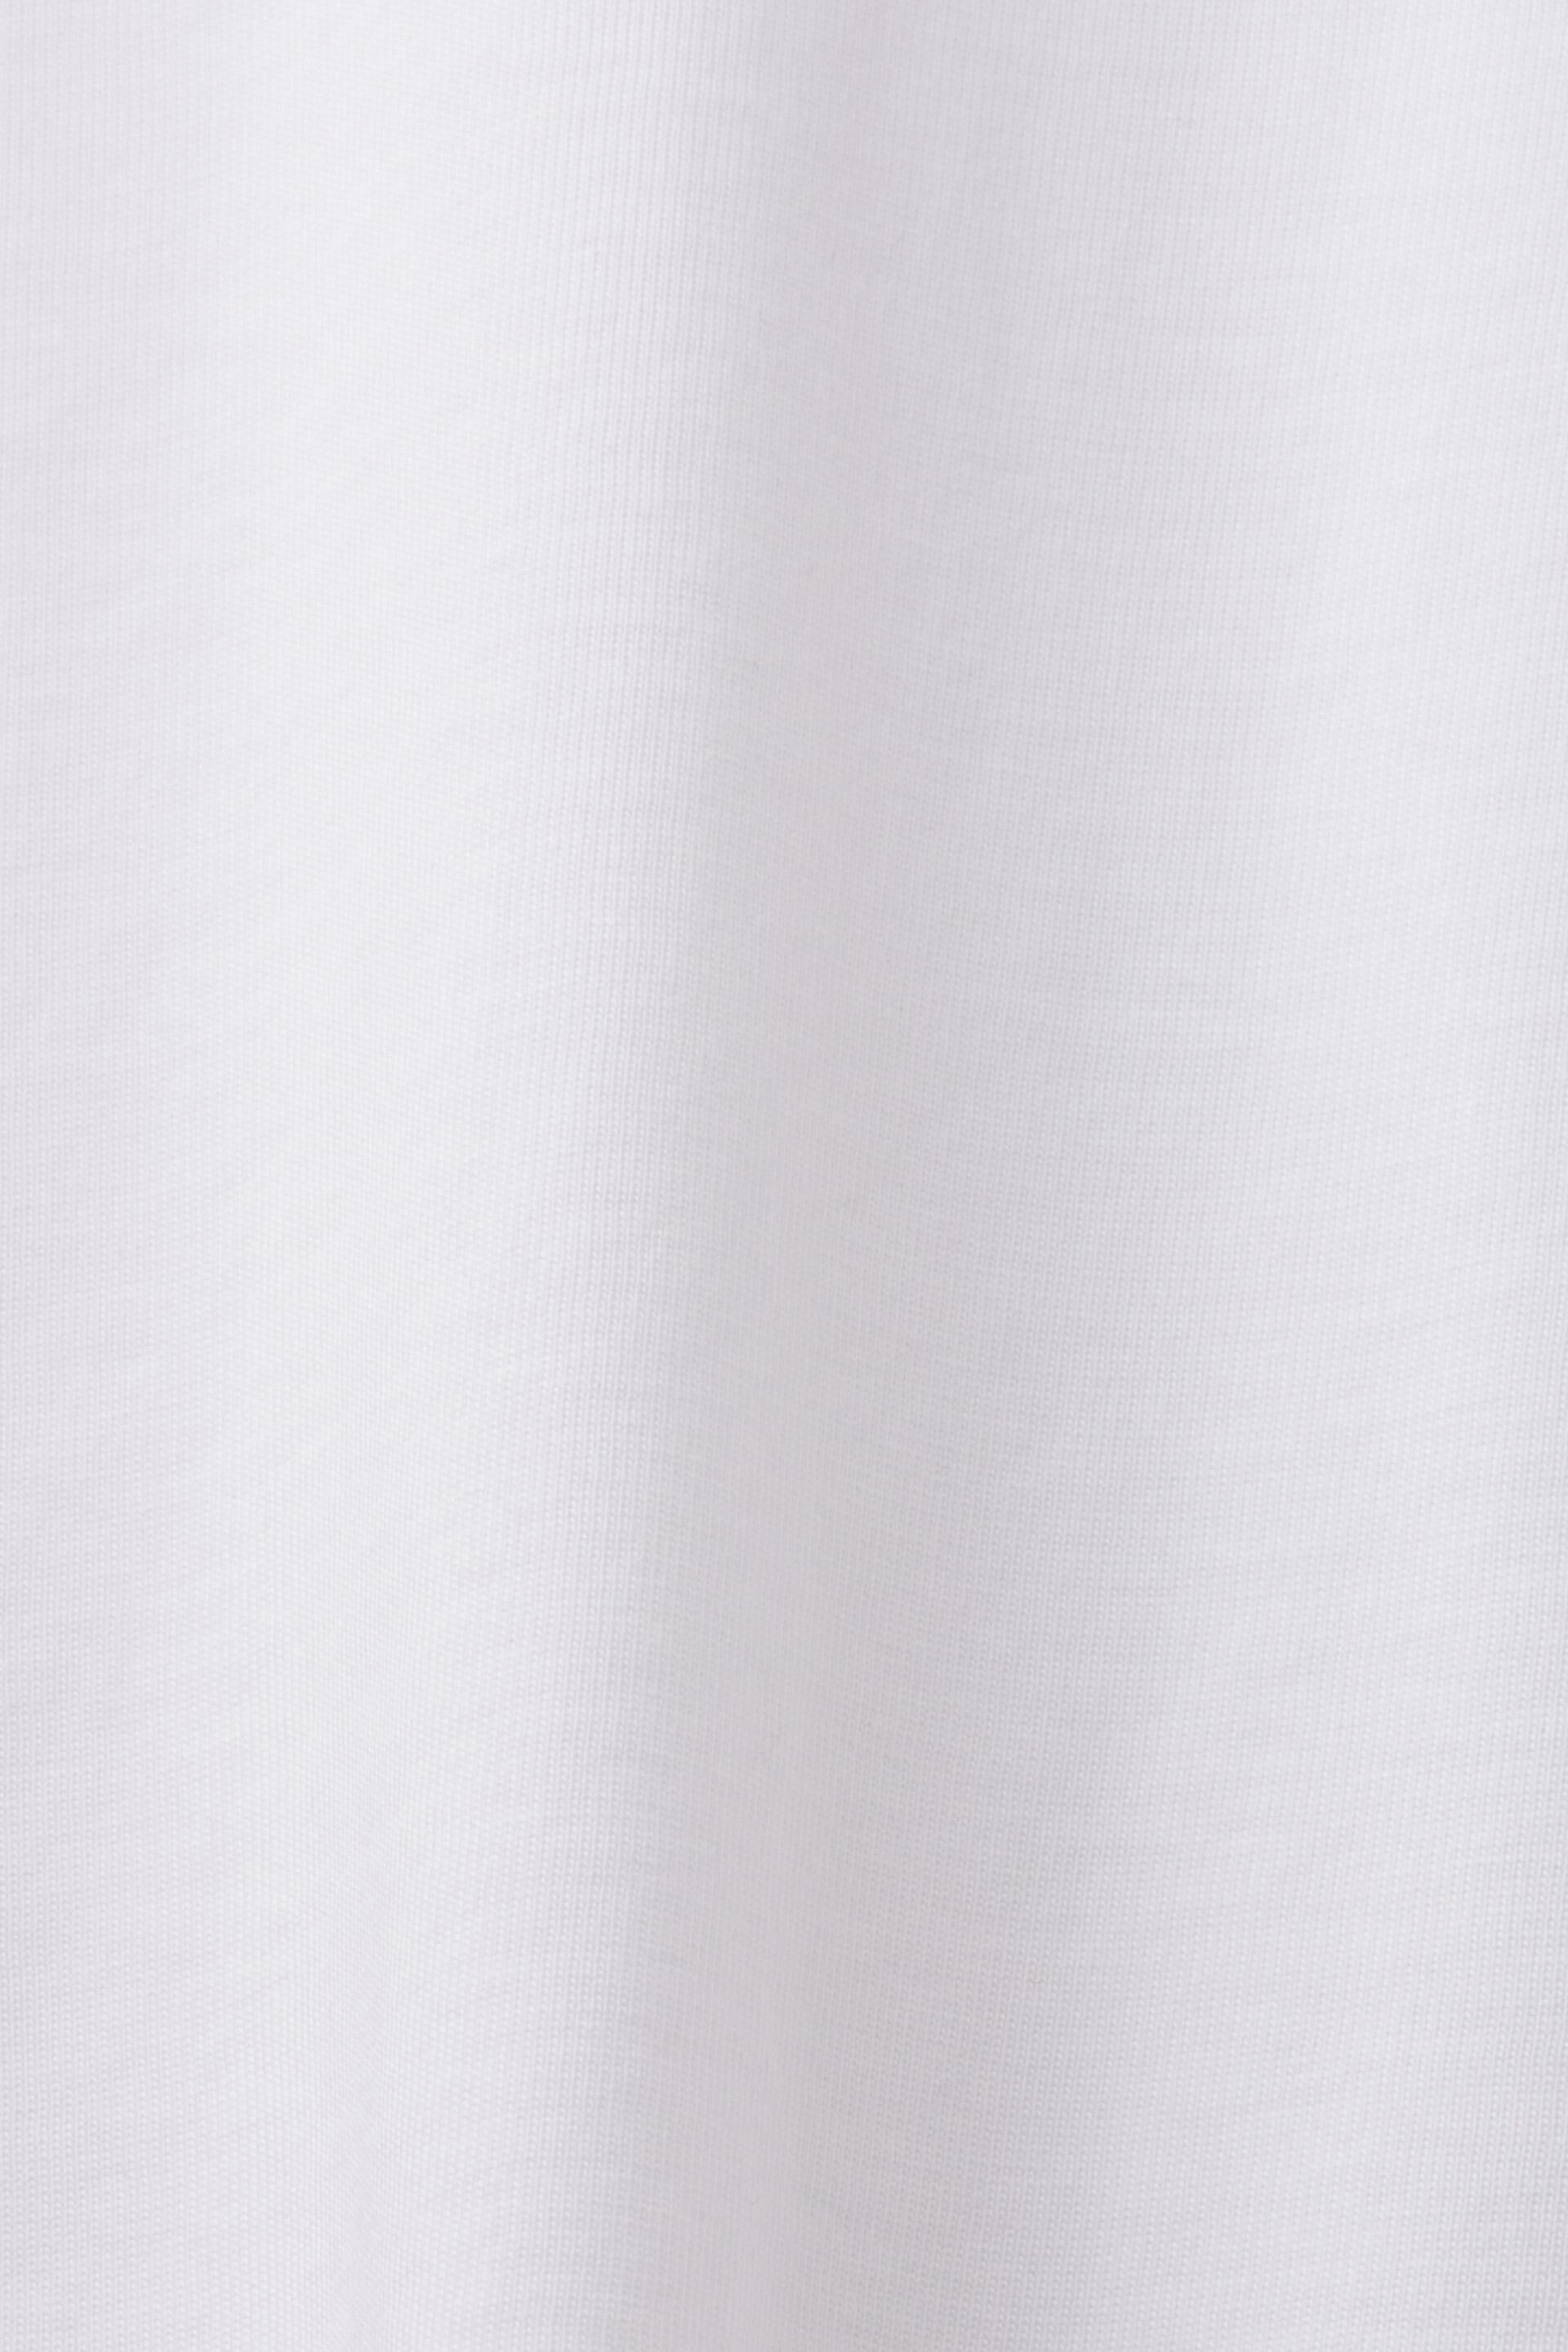 Esprit Baumwolle 100 Jersey-Langarm, %